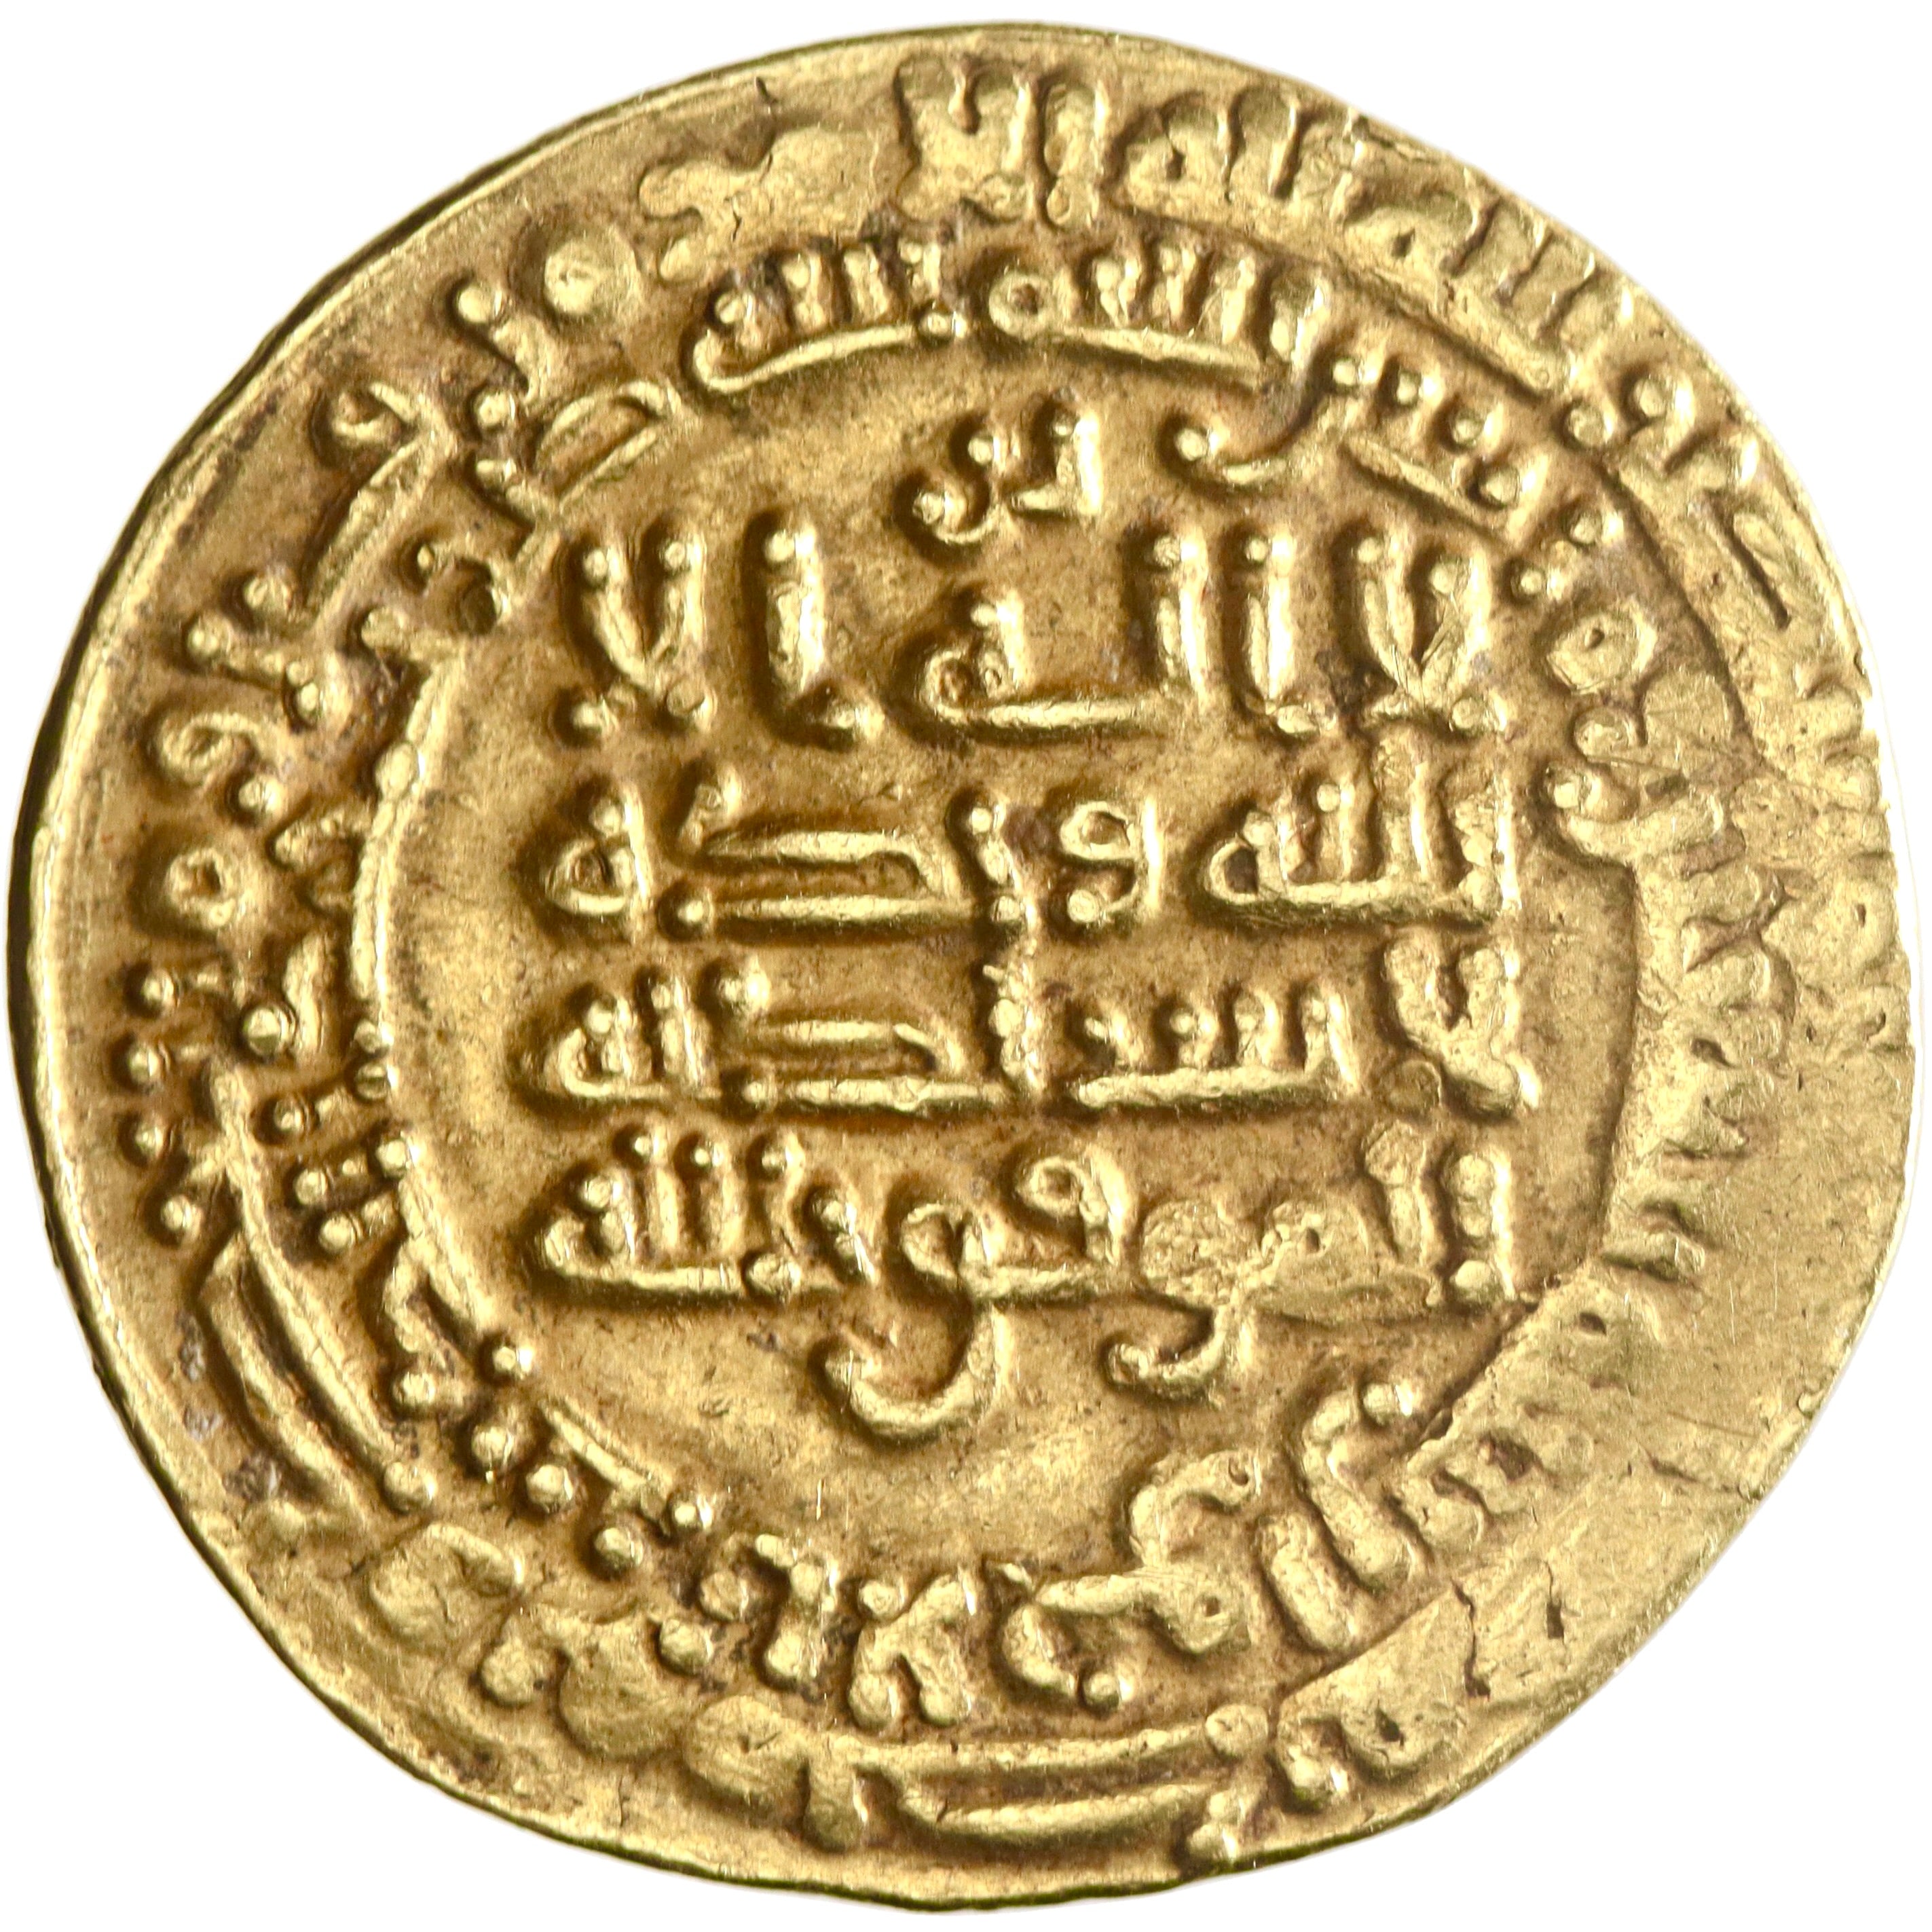 Abbasid, al-Mu'tamid, gold dinar, al-Ahwaz mint, AH 270, citing al-Muwaffaq and Dhu'l-Wizaratayn